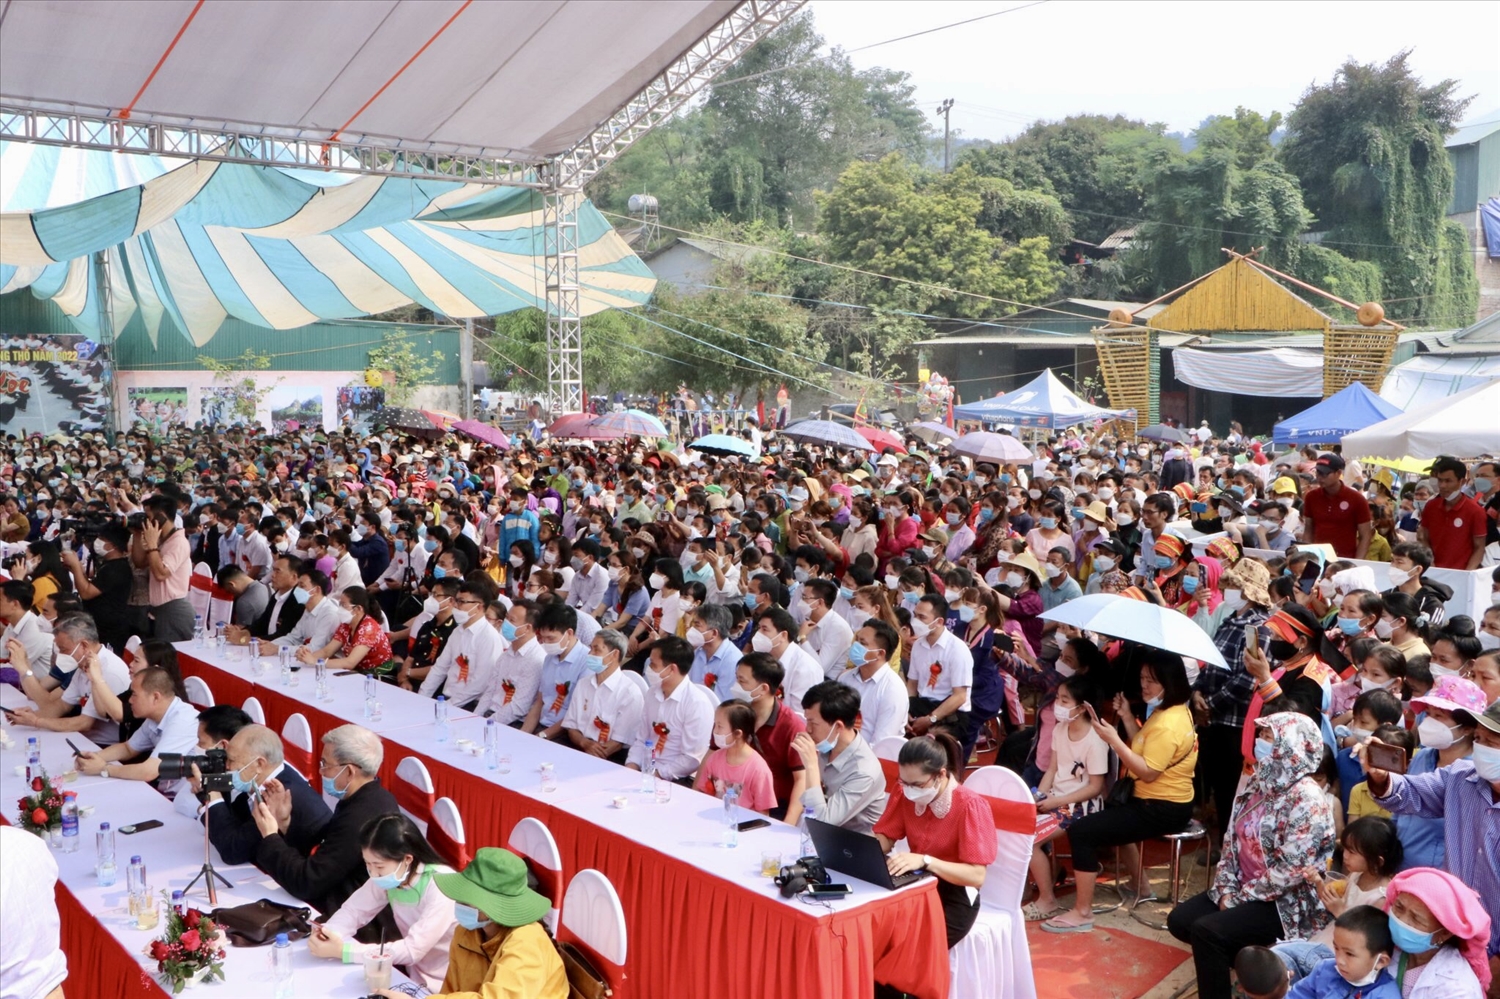 Lễ hội Then Kin Pang năm nay thu hút đồng đảo du khách trong và ngoài tỉnh tới thăm quan, trải nghiệm